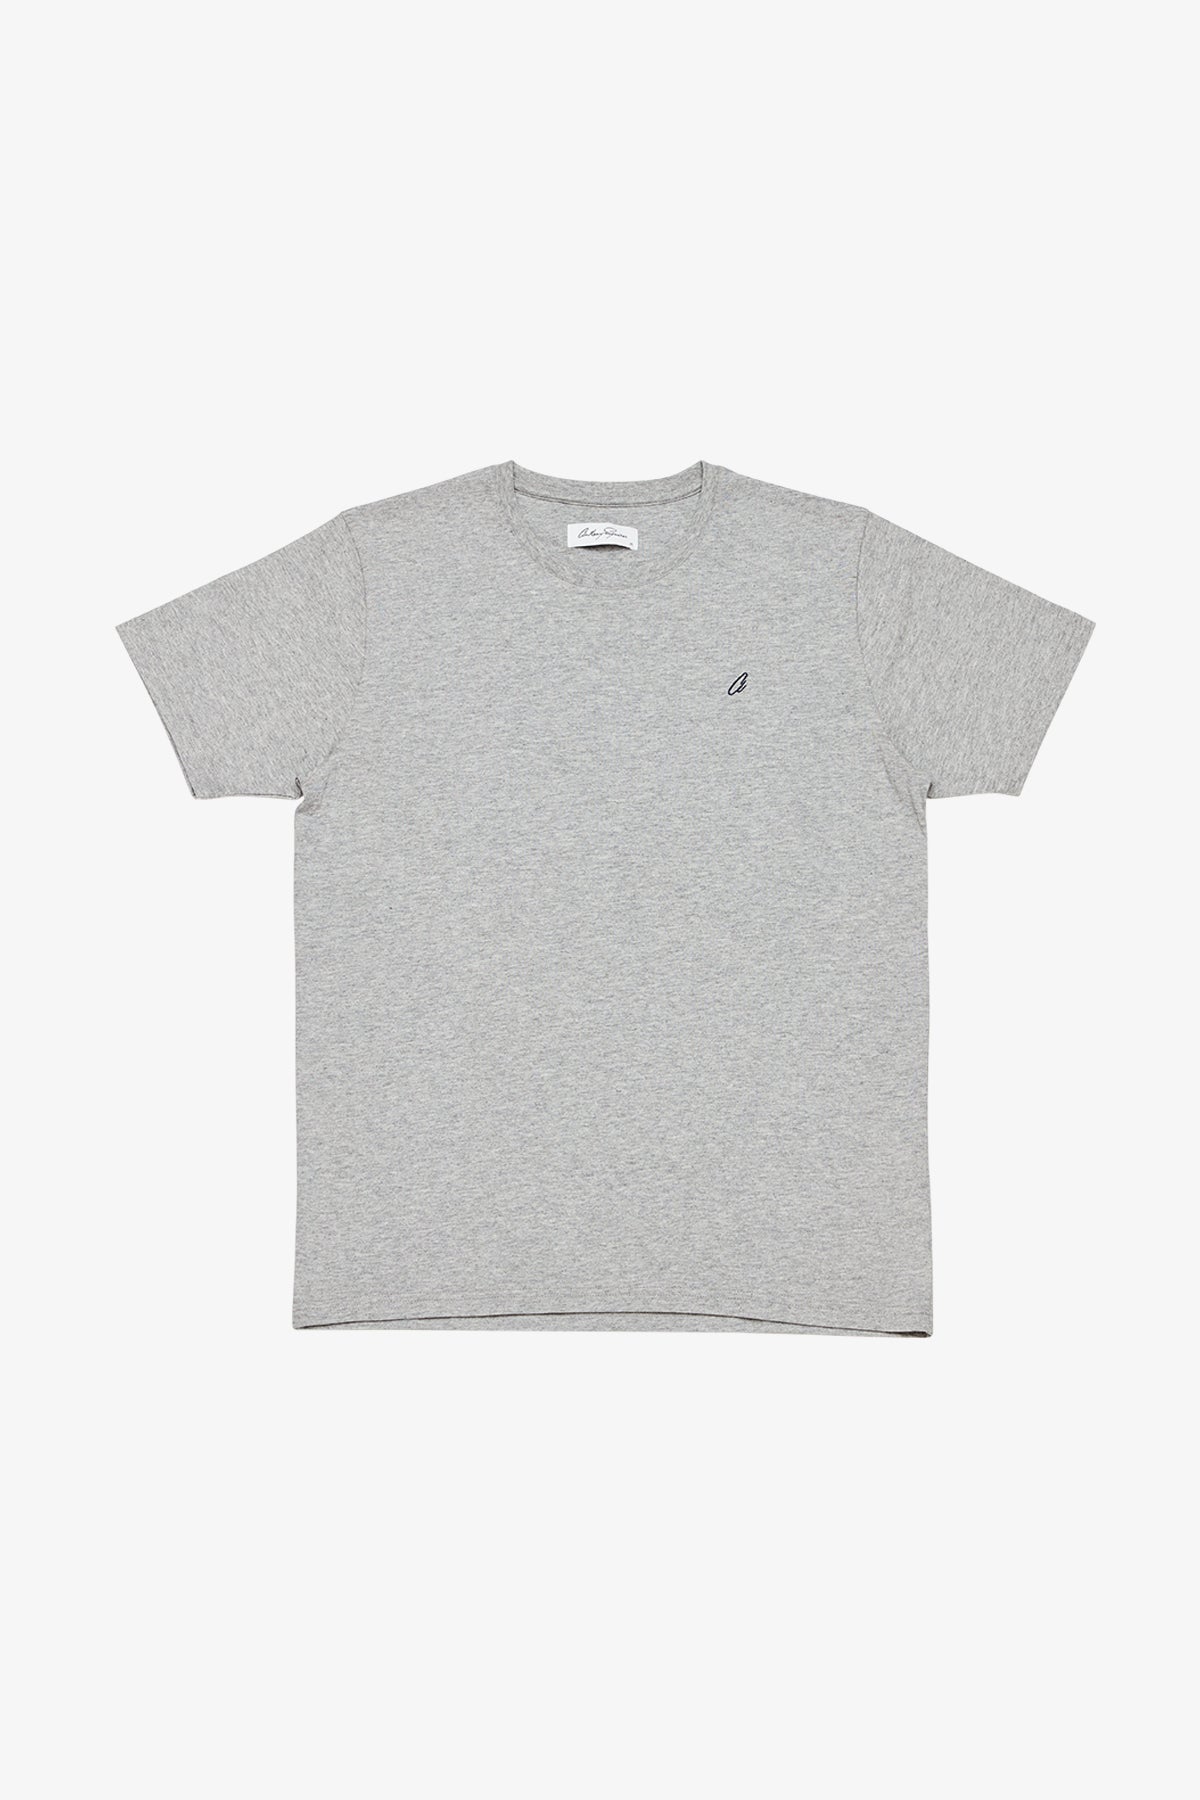 Edan - Mid Grey T-shirt